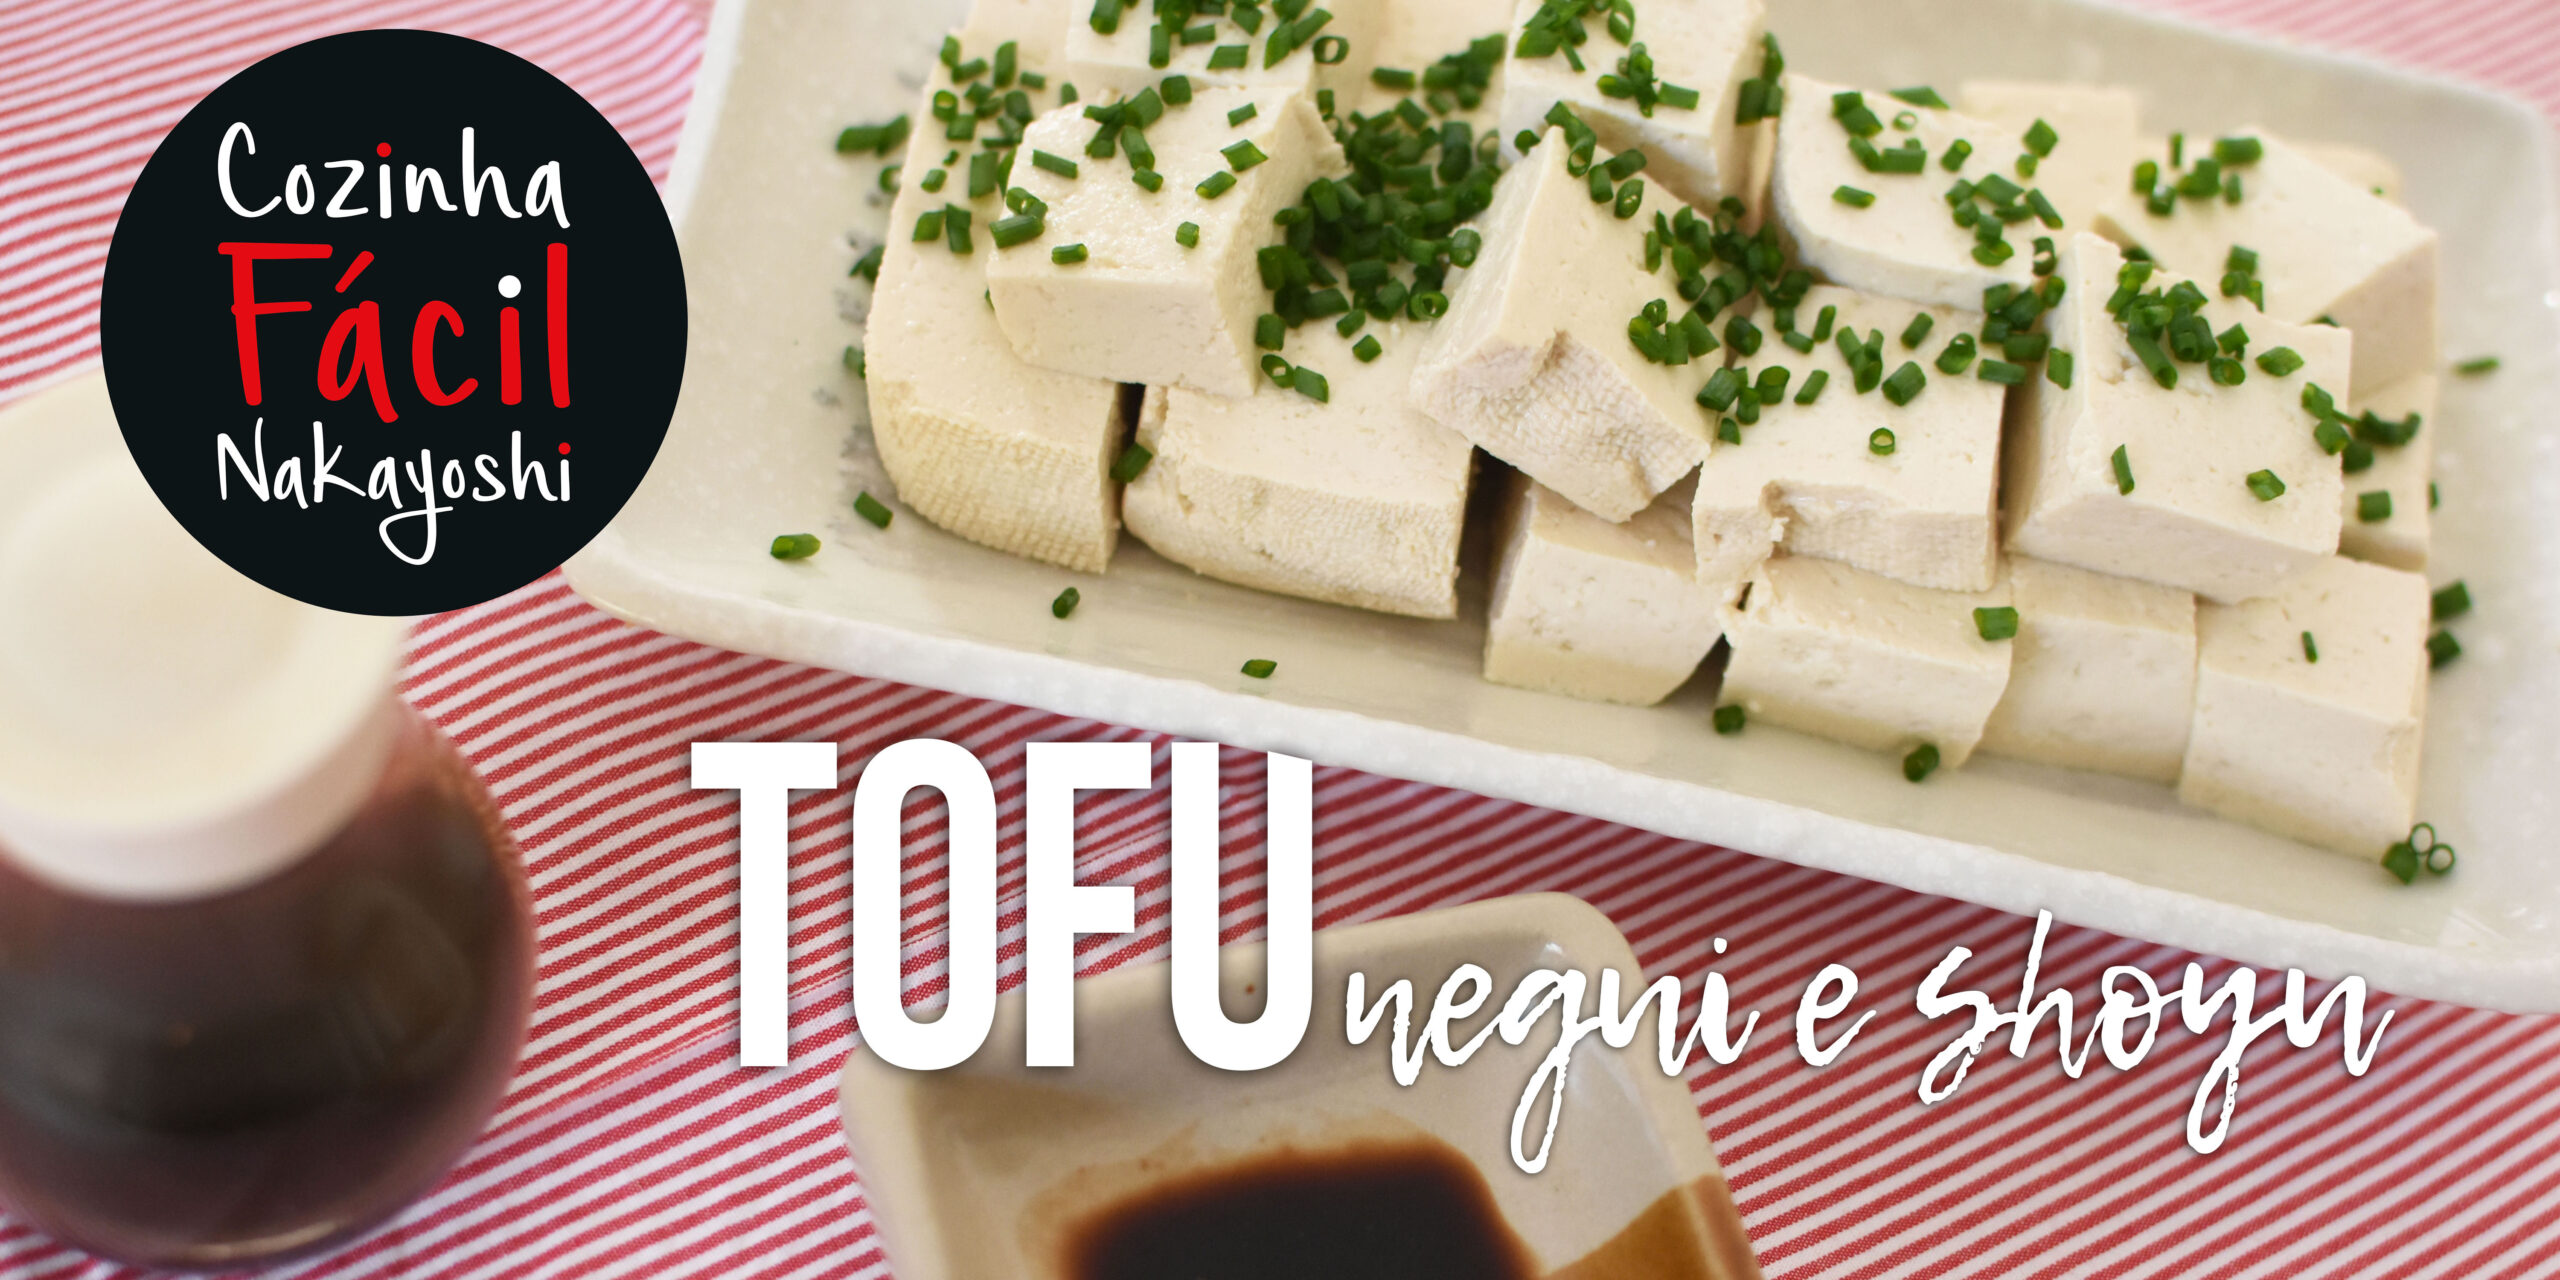 Tofu, Negui e Shoyu | Cozinha Fácil Nakayoshi #43